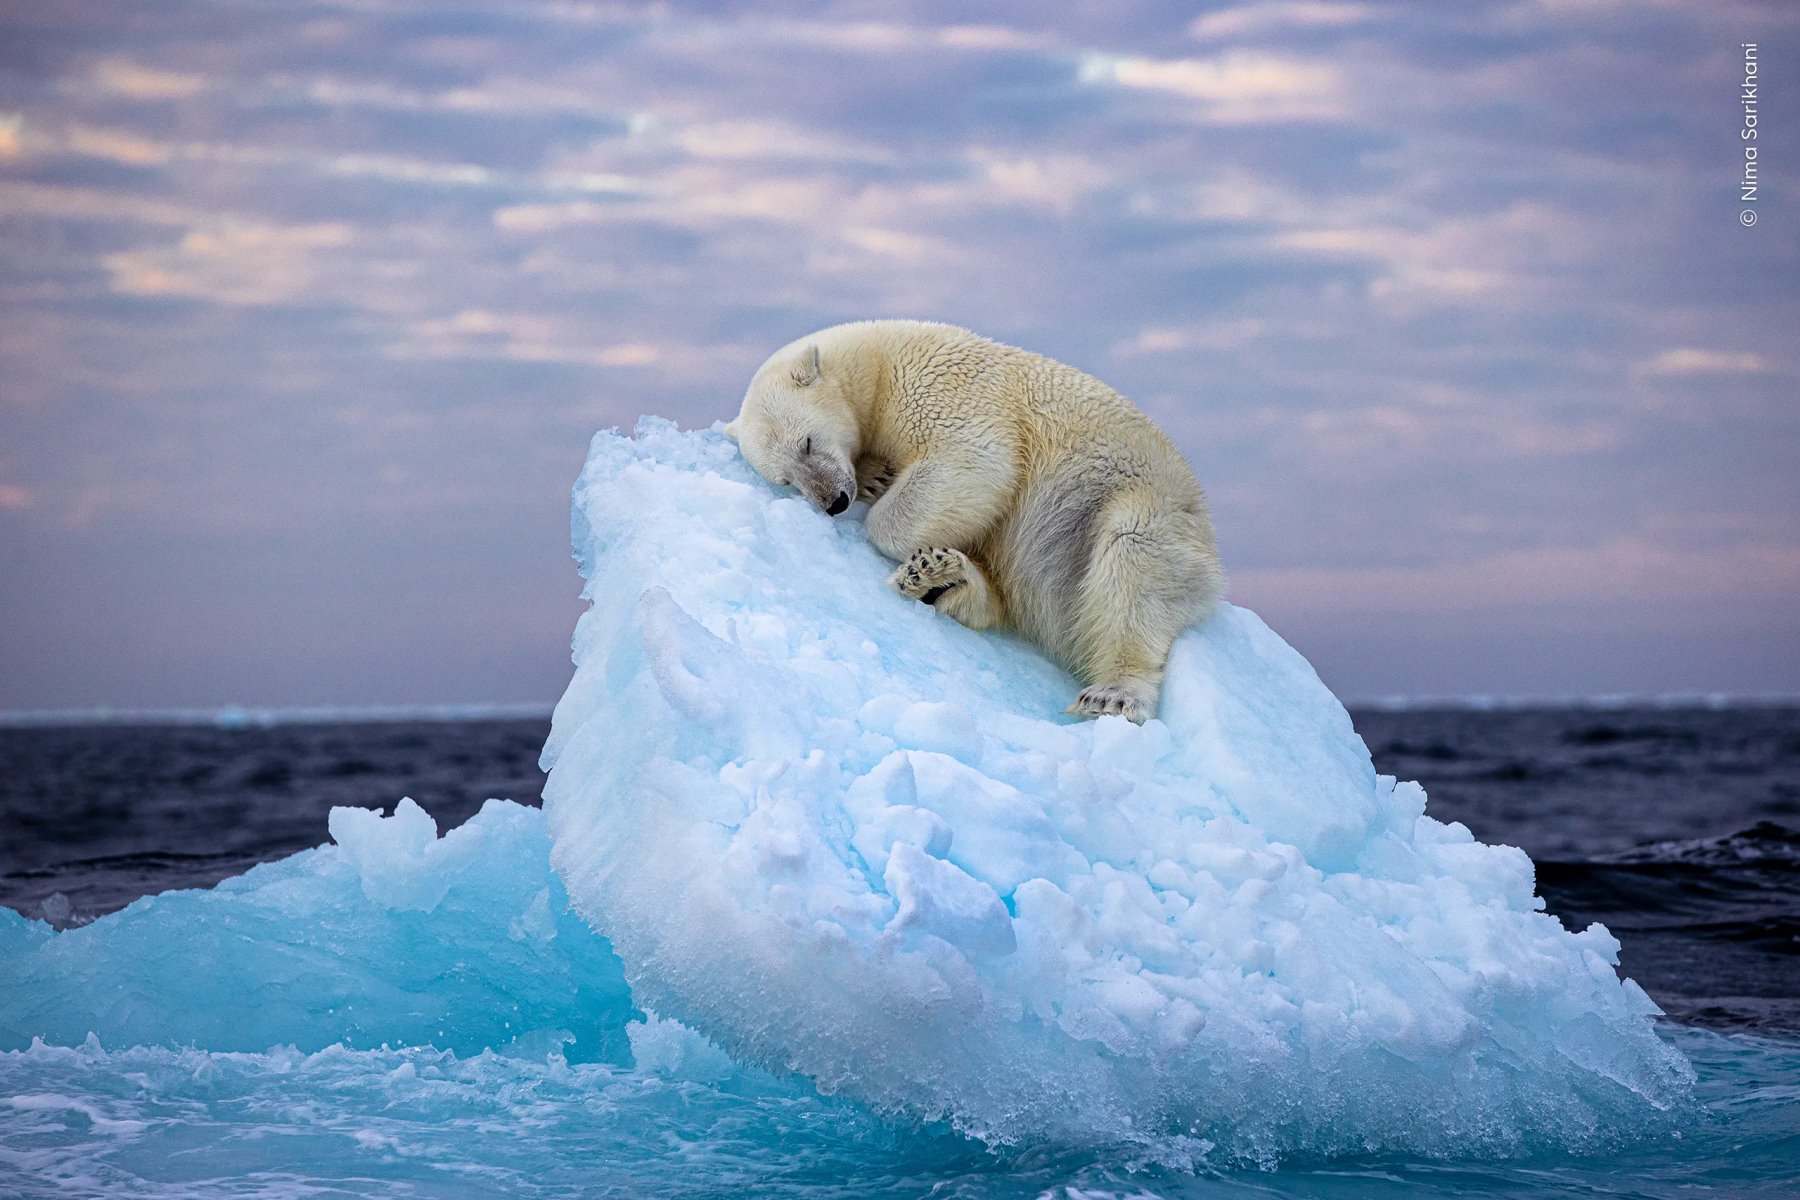 Фото мишки на айсберге победило в международном фотоконкусе!